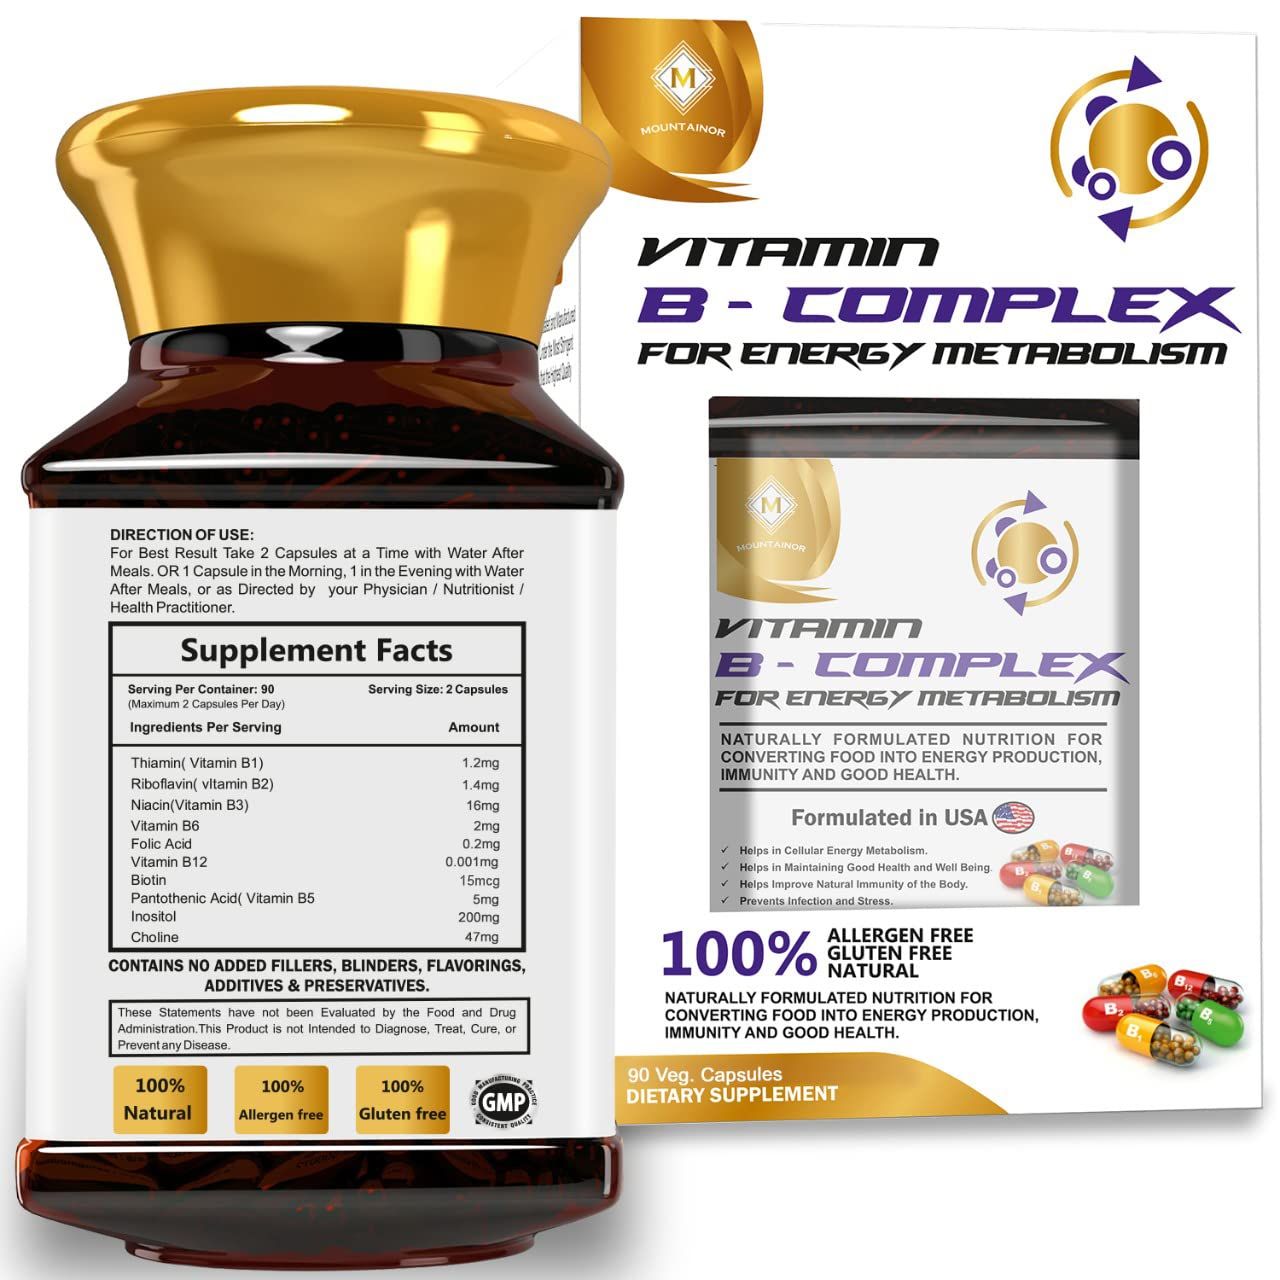 Mountainor Vitamin B Complex Image